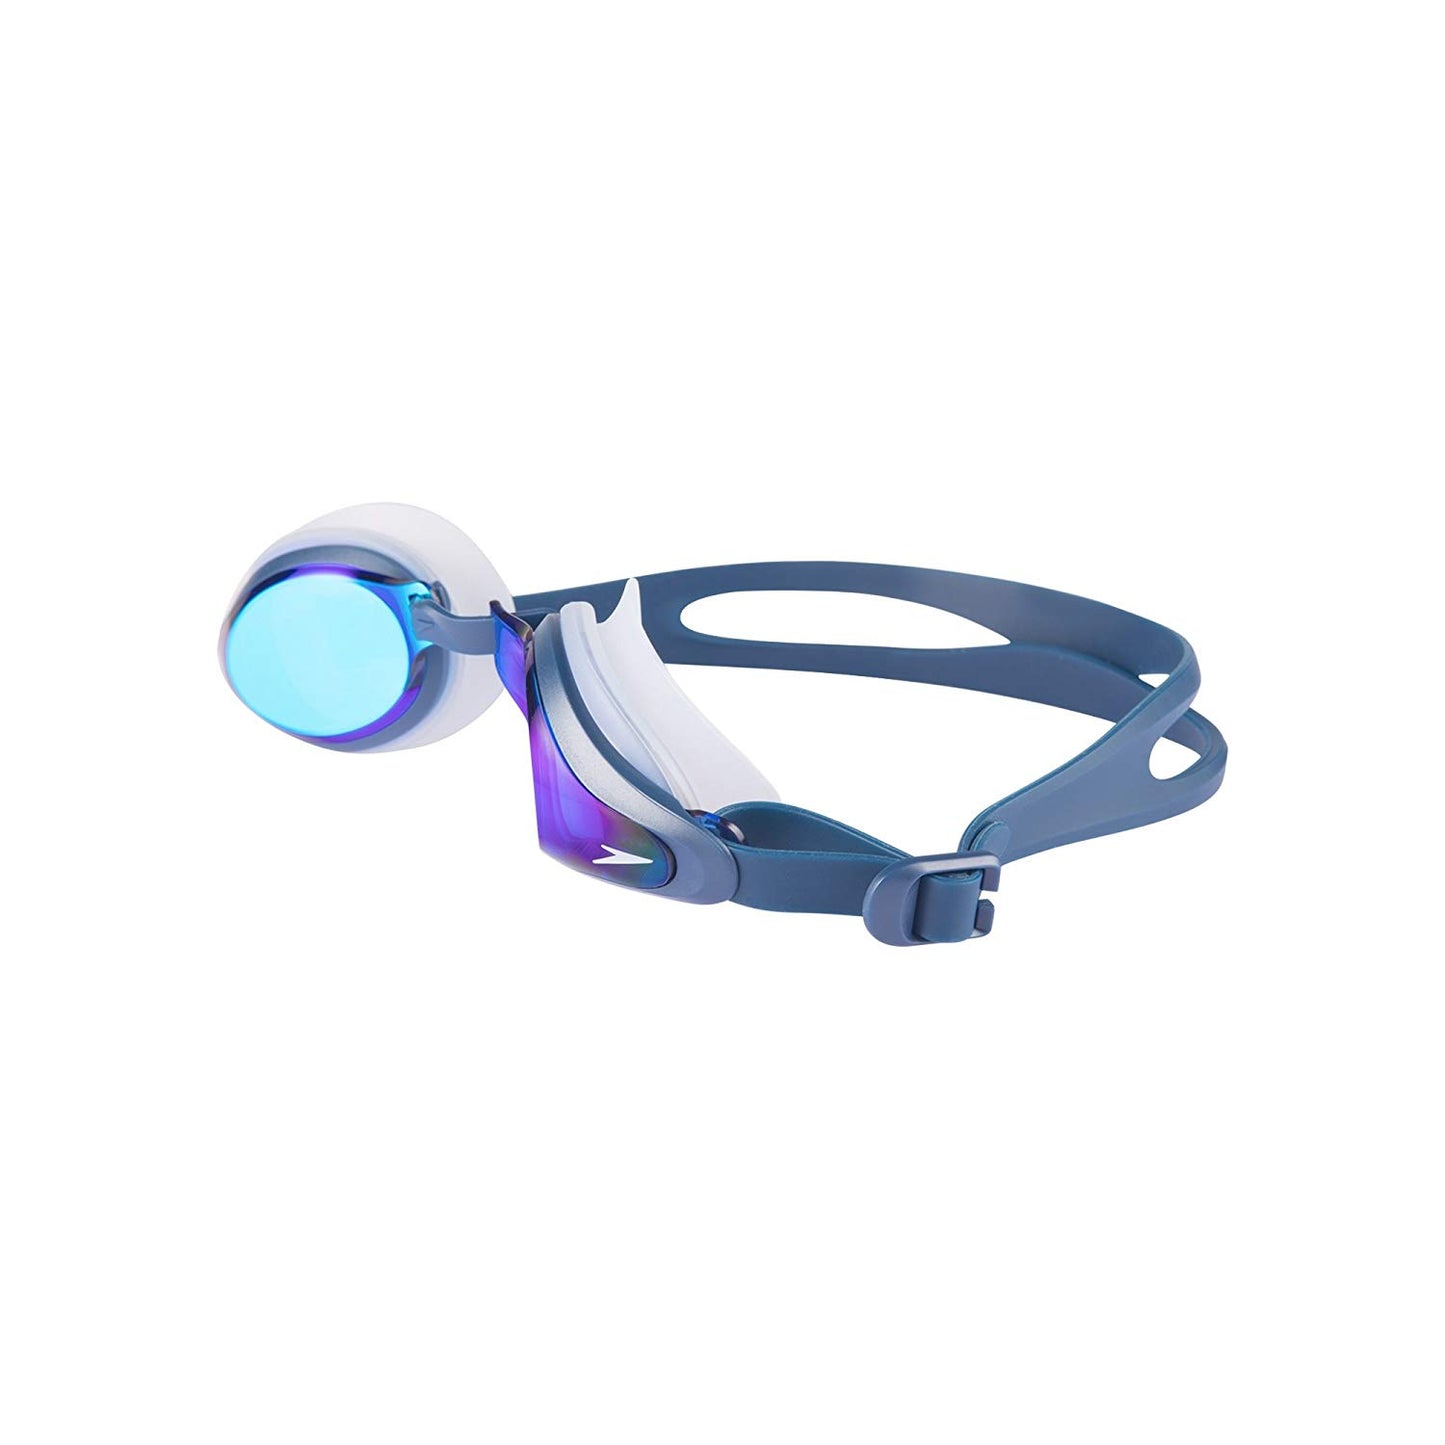 Speedo 811319B974 Blend Mariner Supreme Goggles (Navy/Blue) - Best Price online Prokicksports.com